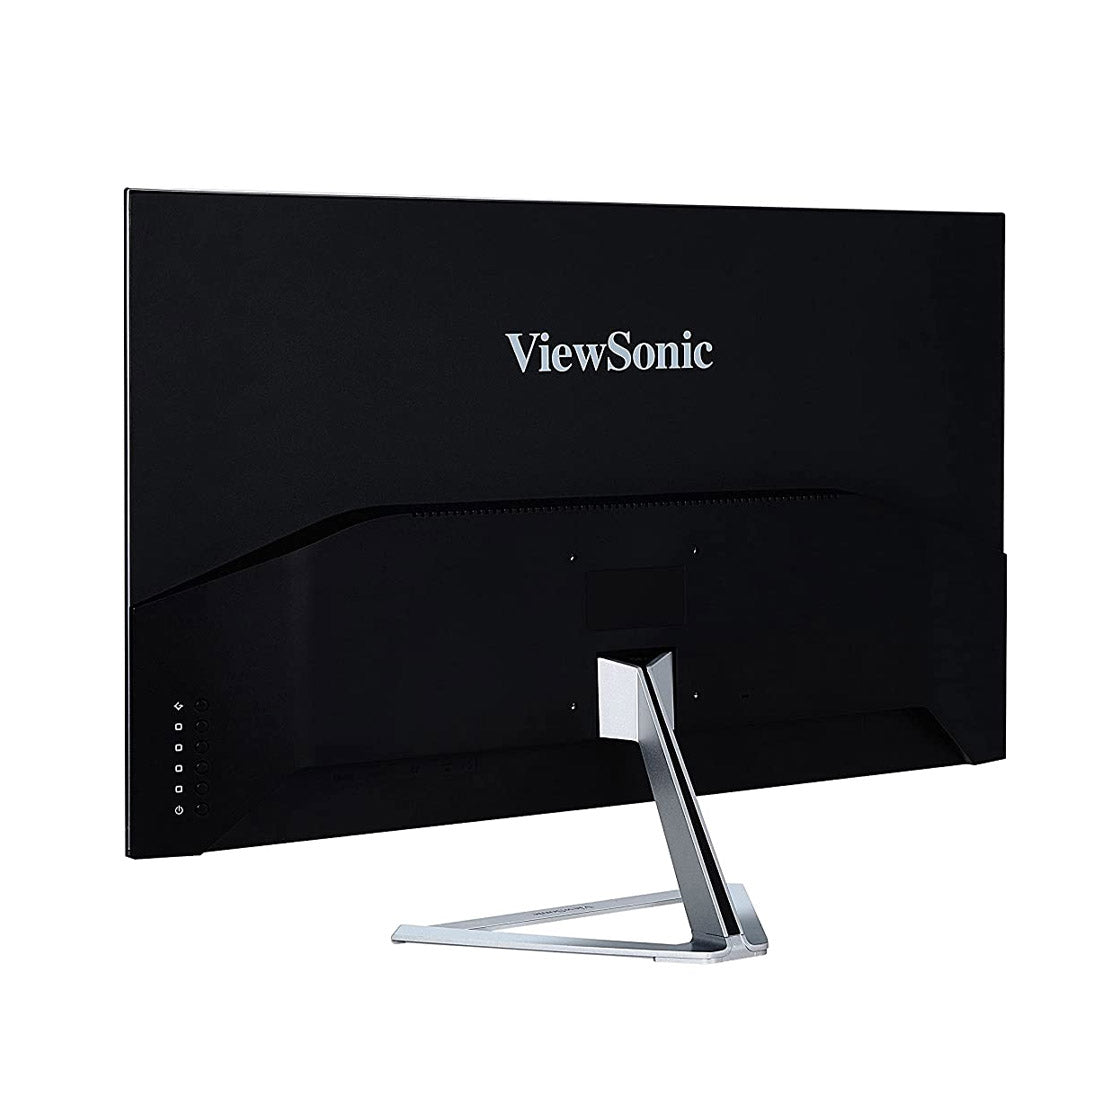 ViewSonic VX3276-2K-MHD 32-इंच QHD IPS मॉनिटर डुअल इंटीग्रेटेड स्पीकर और आई केयर टेक्नोलॉजी के साथ